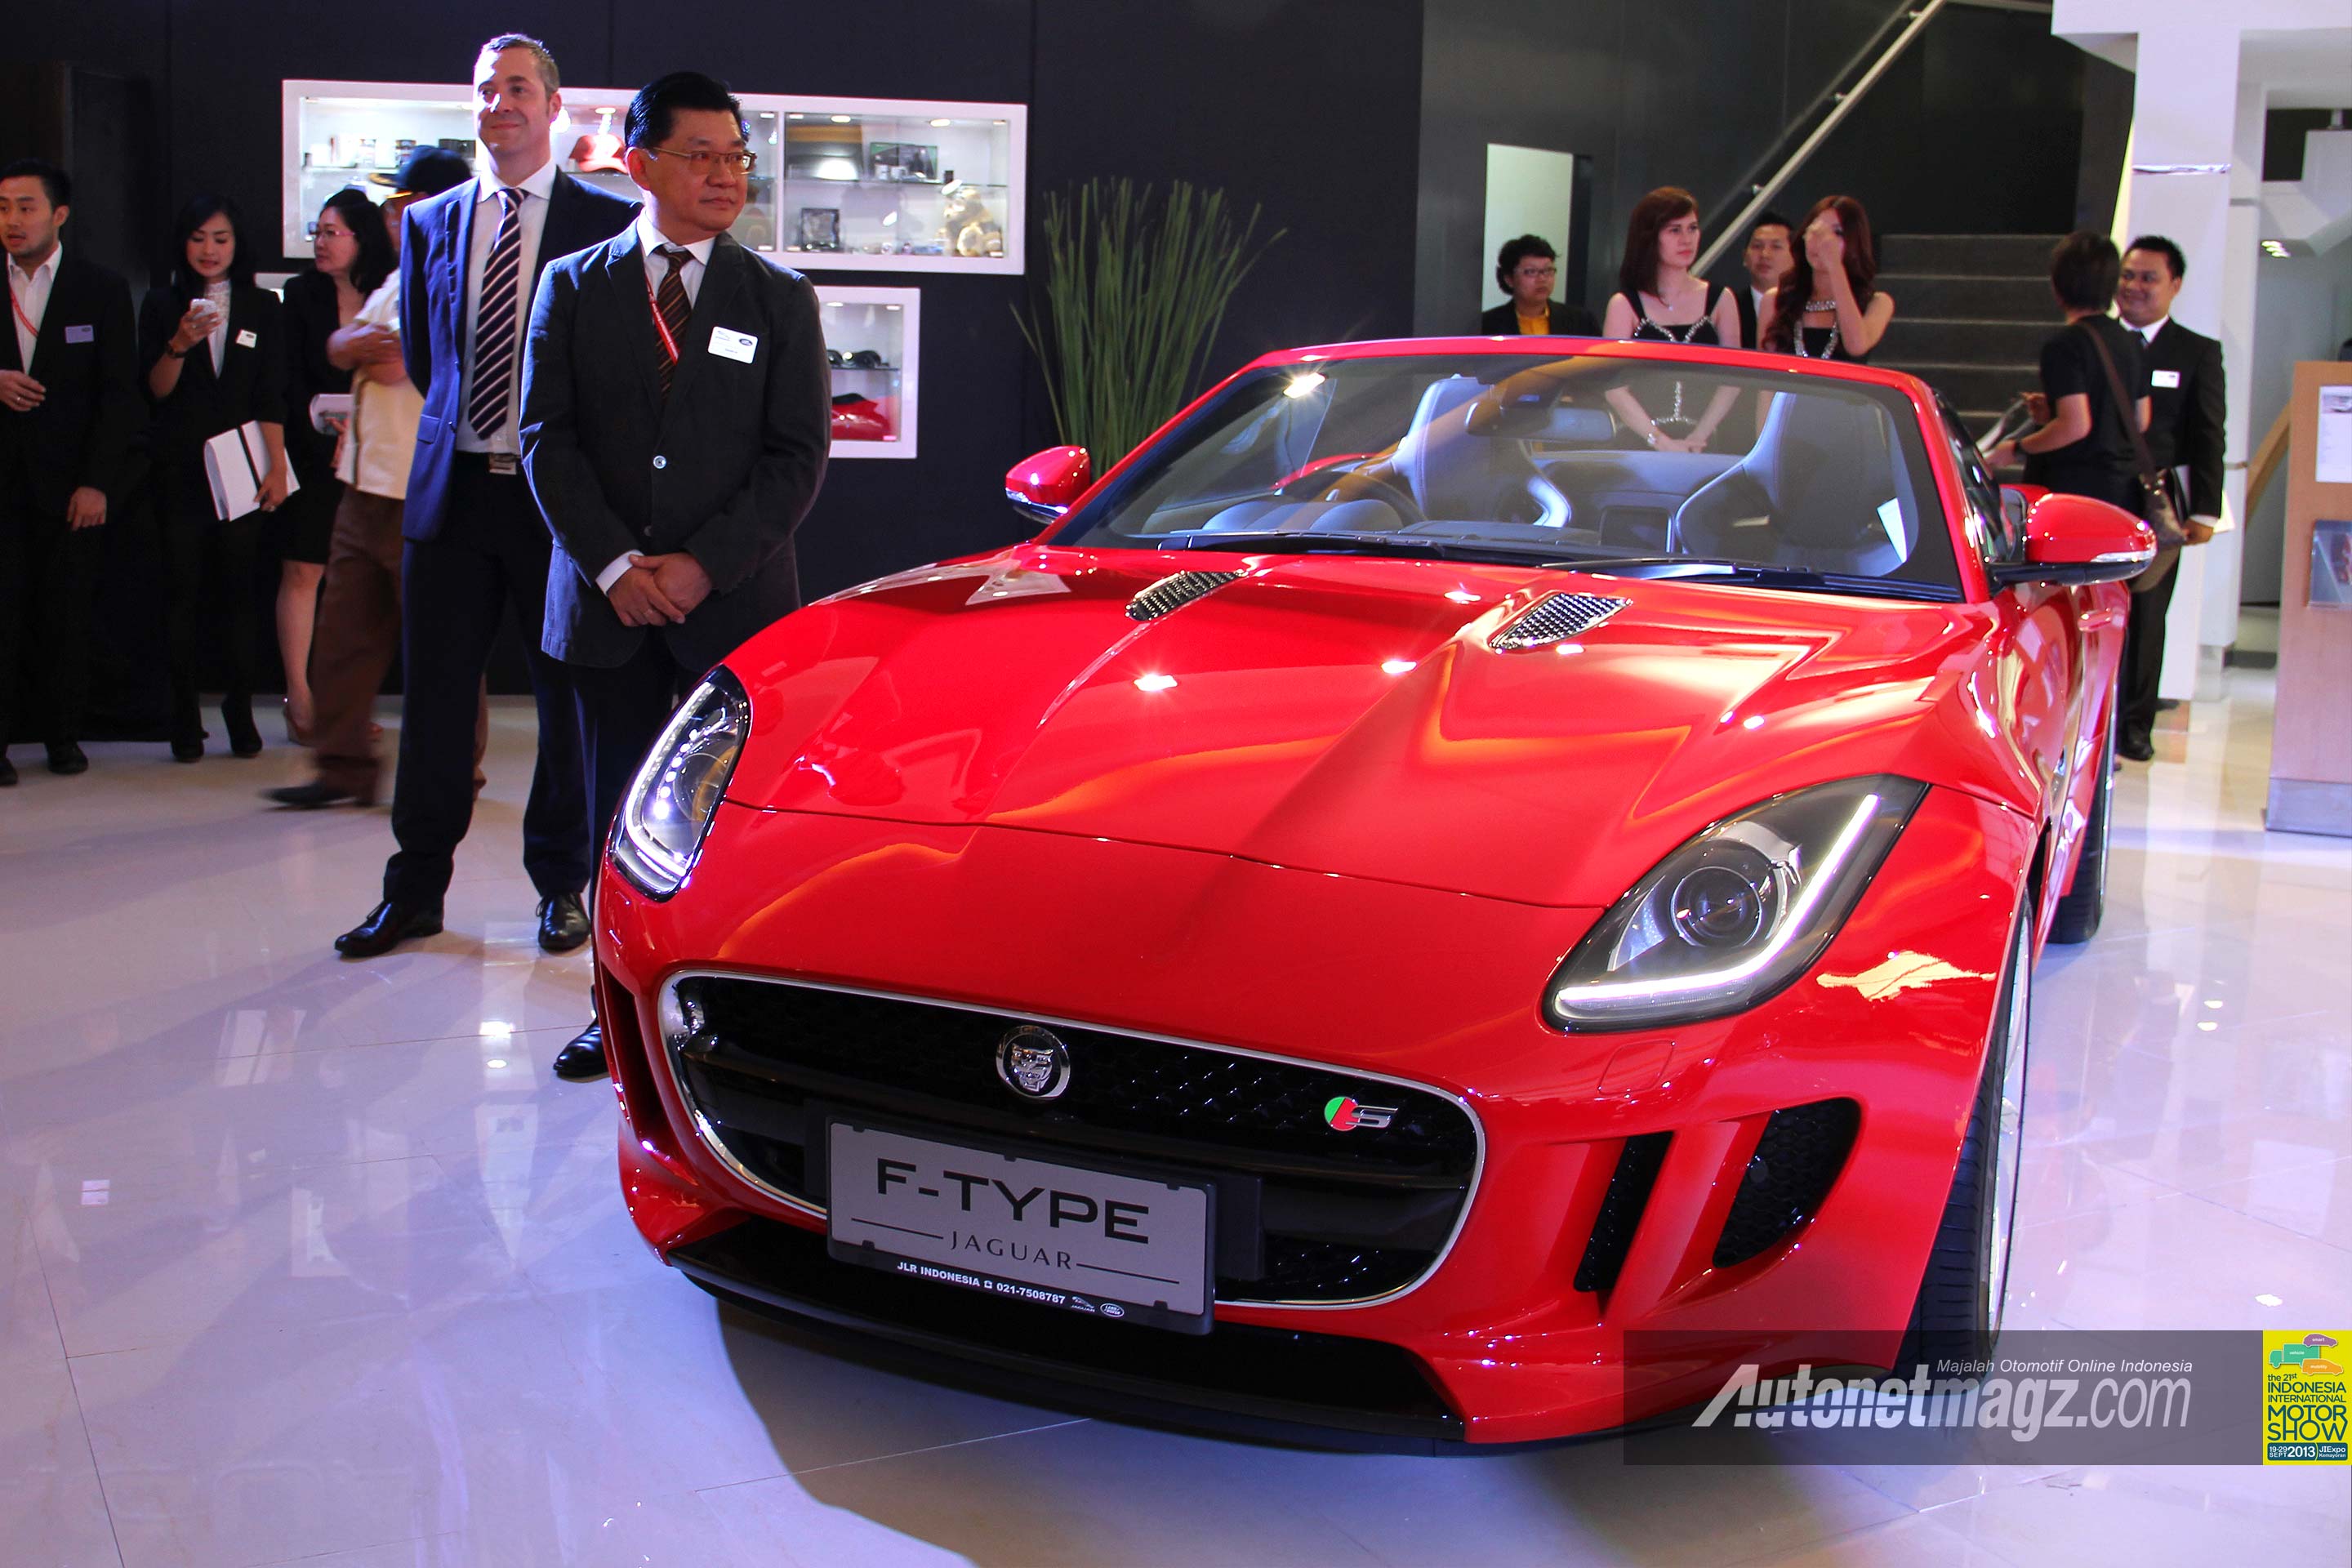 IIMS 2013, Peluncuran Jaguar F-Type di IIMS 2013: Jaguar F-Type : 2013 World Car Design Of The Year Kini Hadir di Indonesia